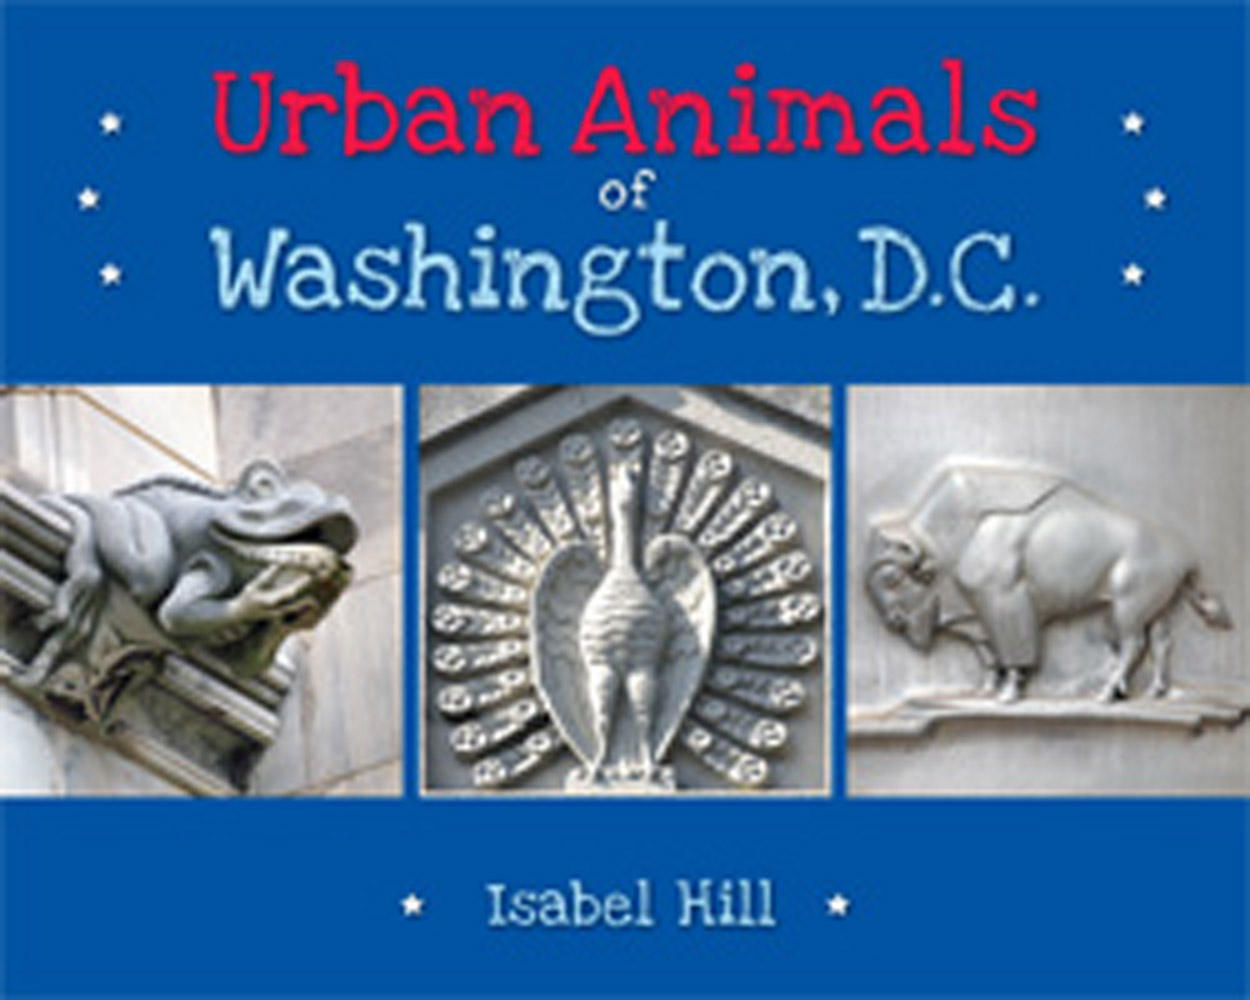 Urban Animals of Washington, D.C.